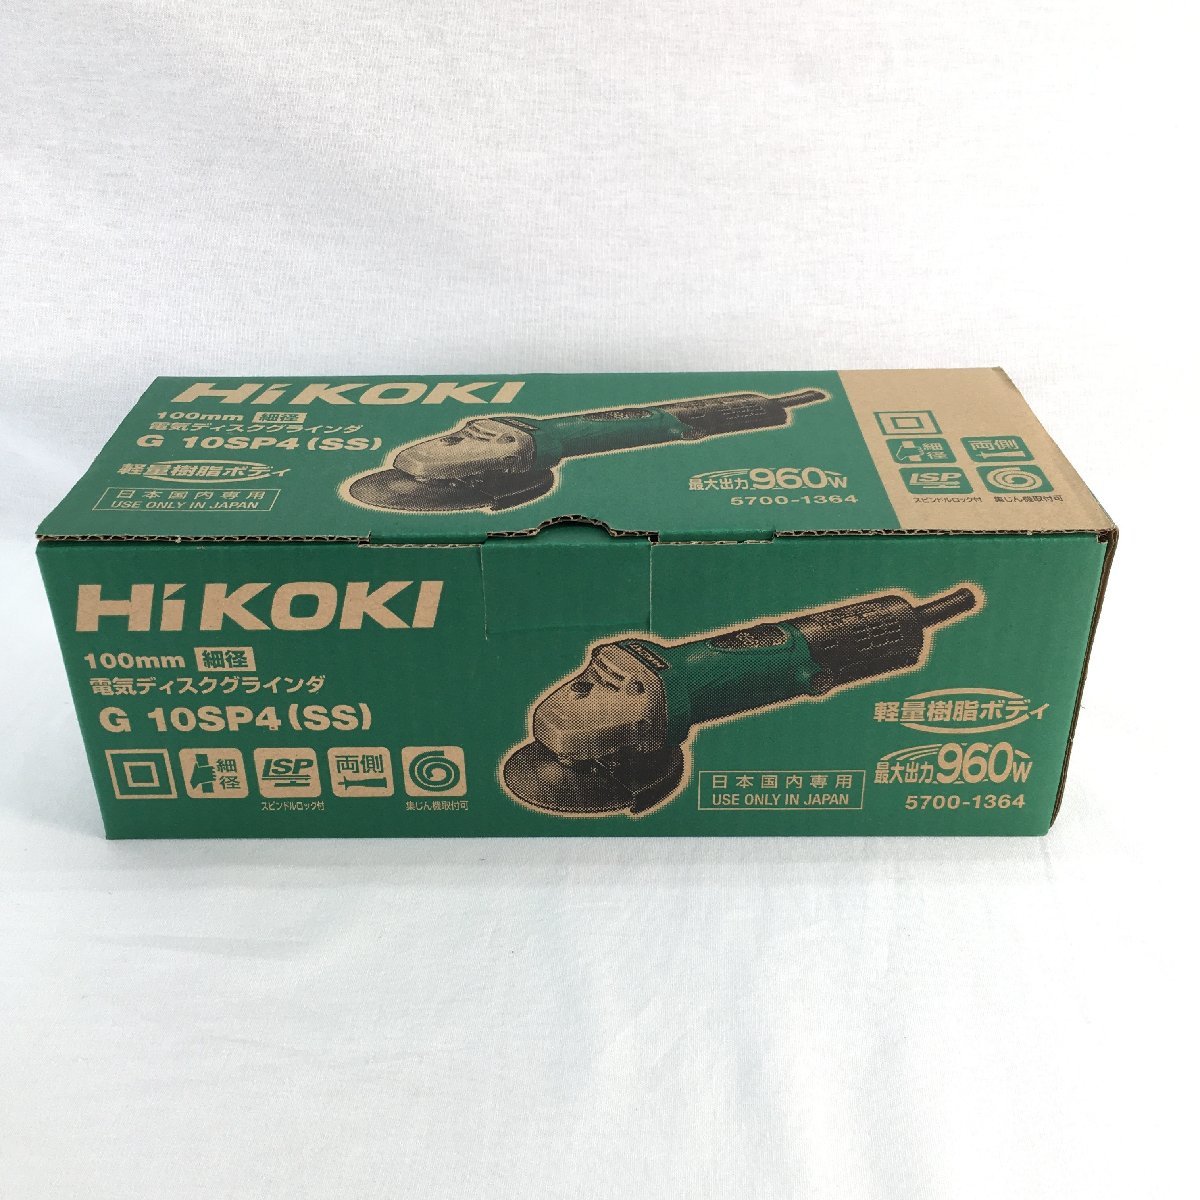 『中古品』HiKOKI ハイコーキ ディスクグラインダー G10SP4(SS) ①